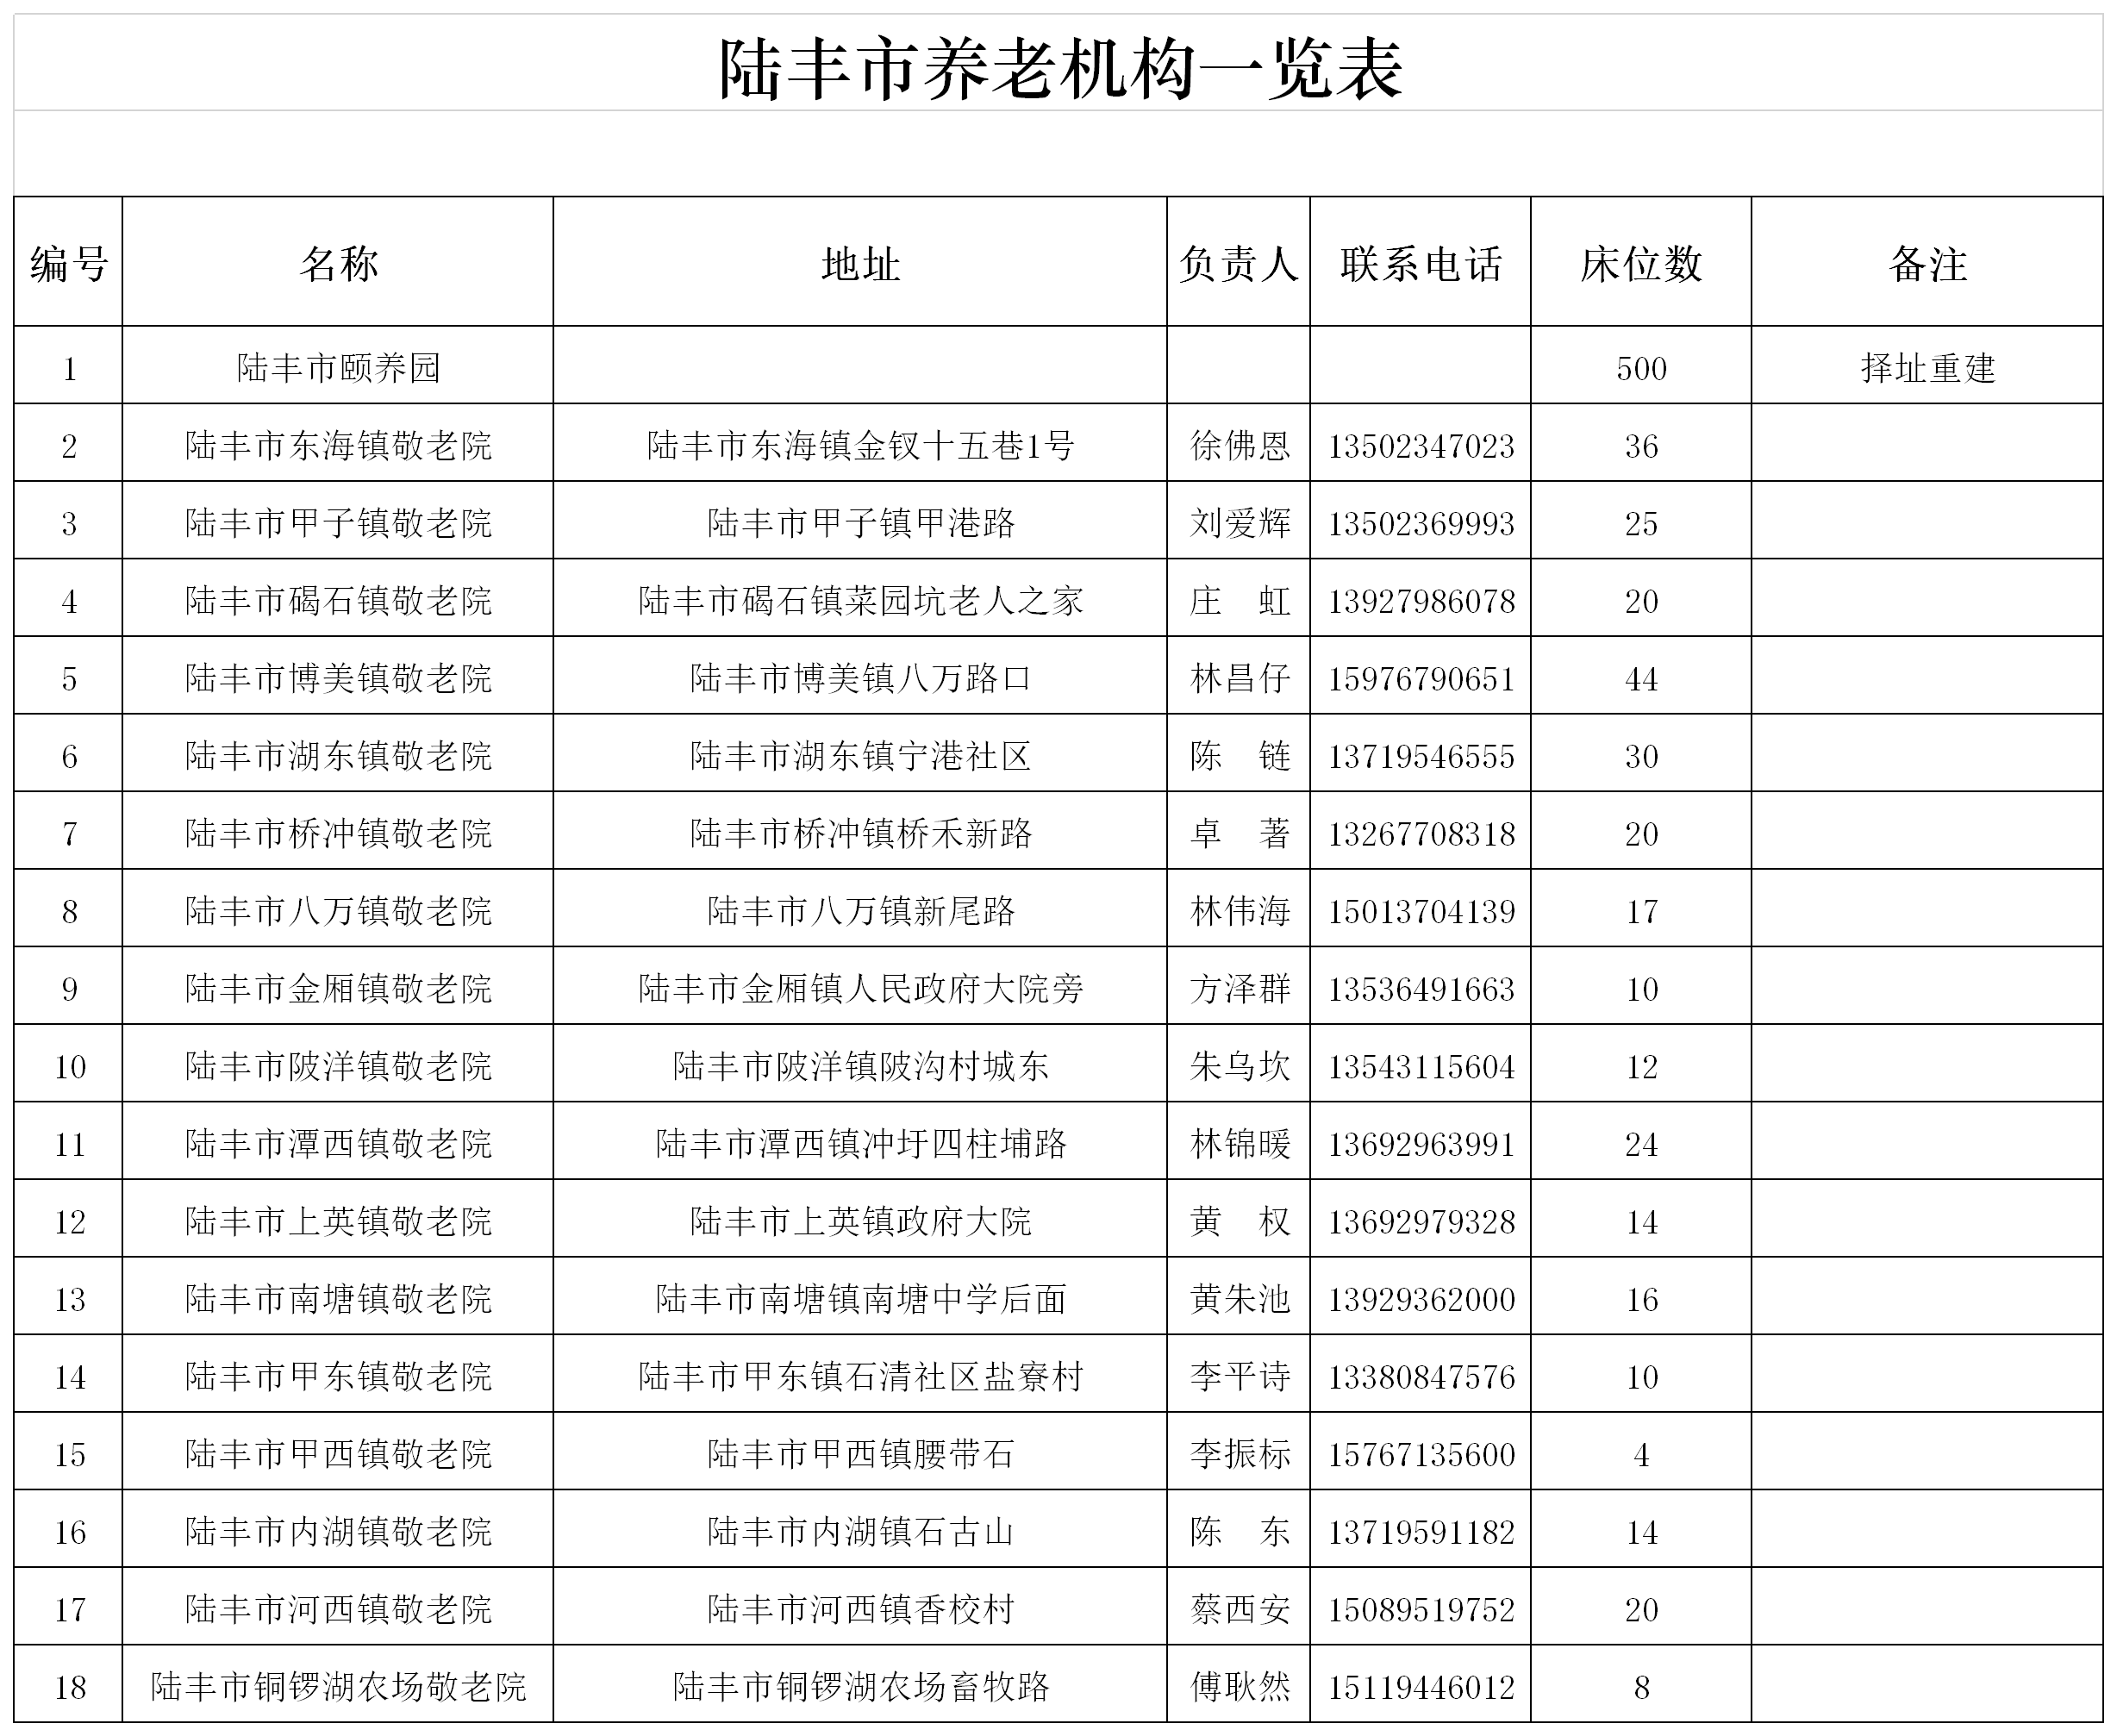 陆丰市养老机构一览表.png